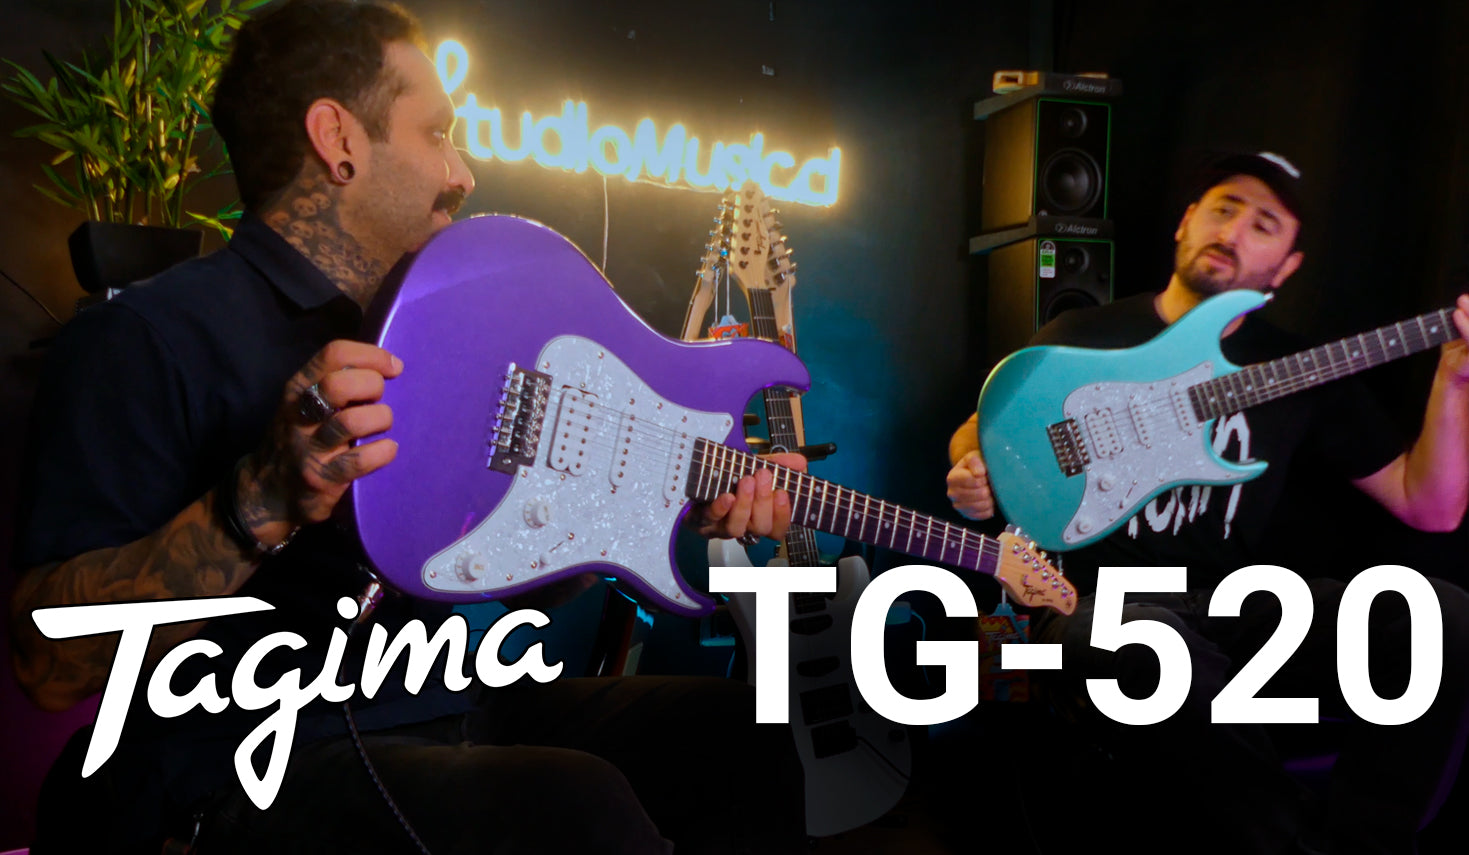 Tagima TG-520, Nuevo Modelo de Guitarras (Review y Prueba) 😎🎸